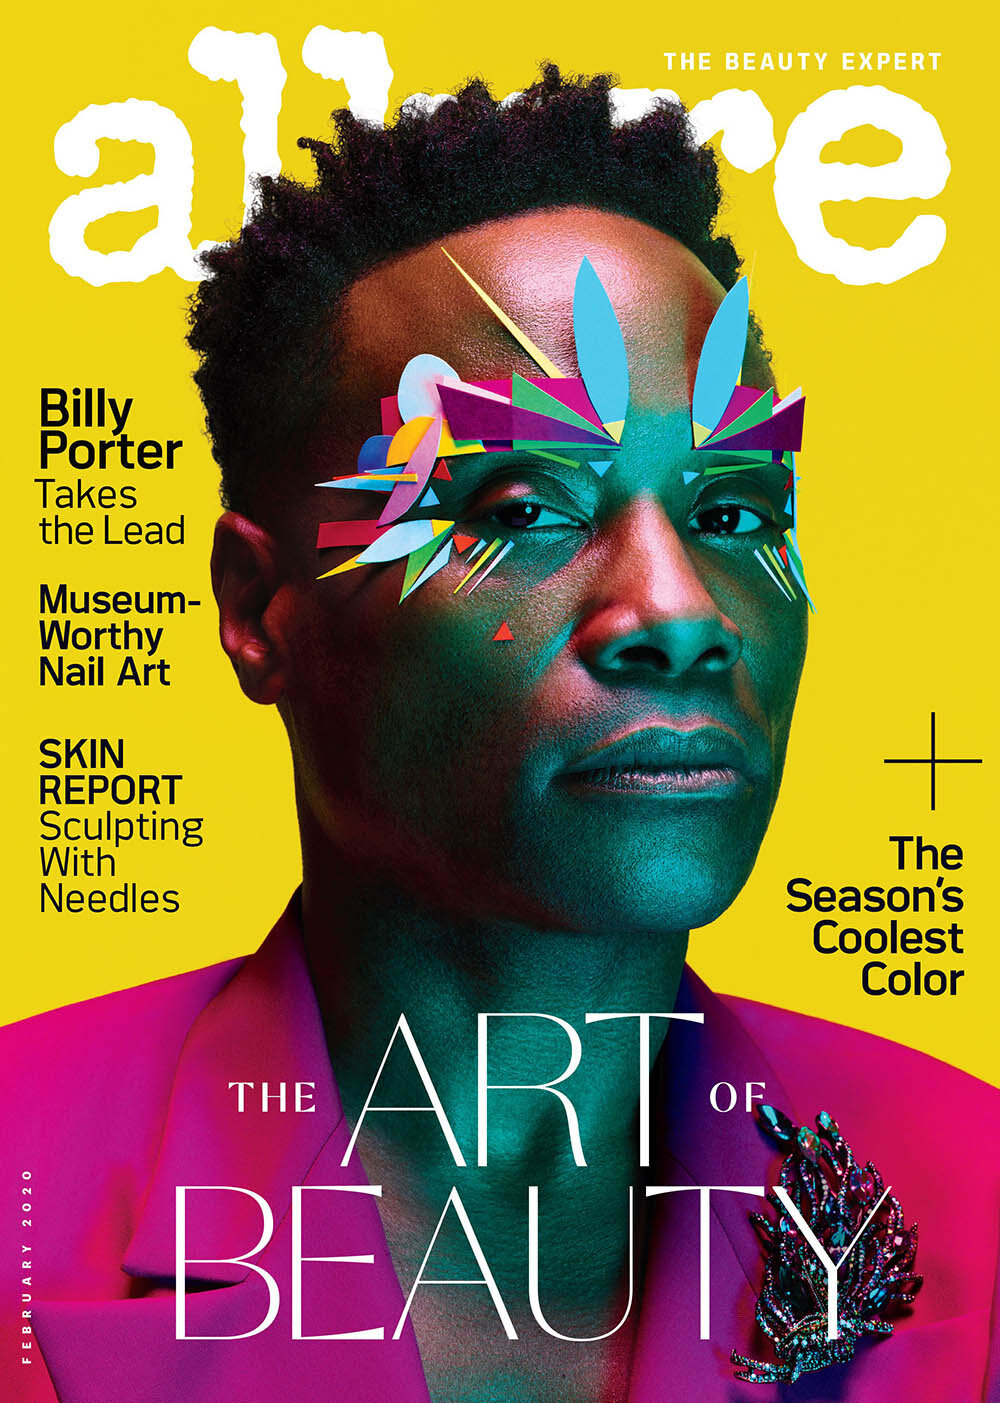 Billy-Porter-covers-Allure-US-February-2020-by-Ben-Hassett-1.jpg